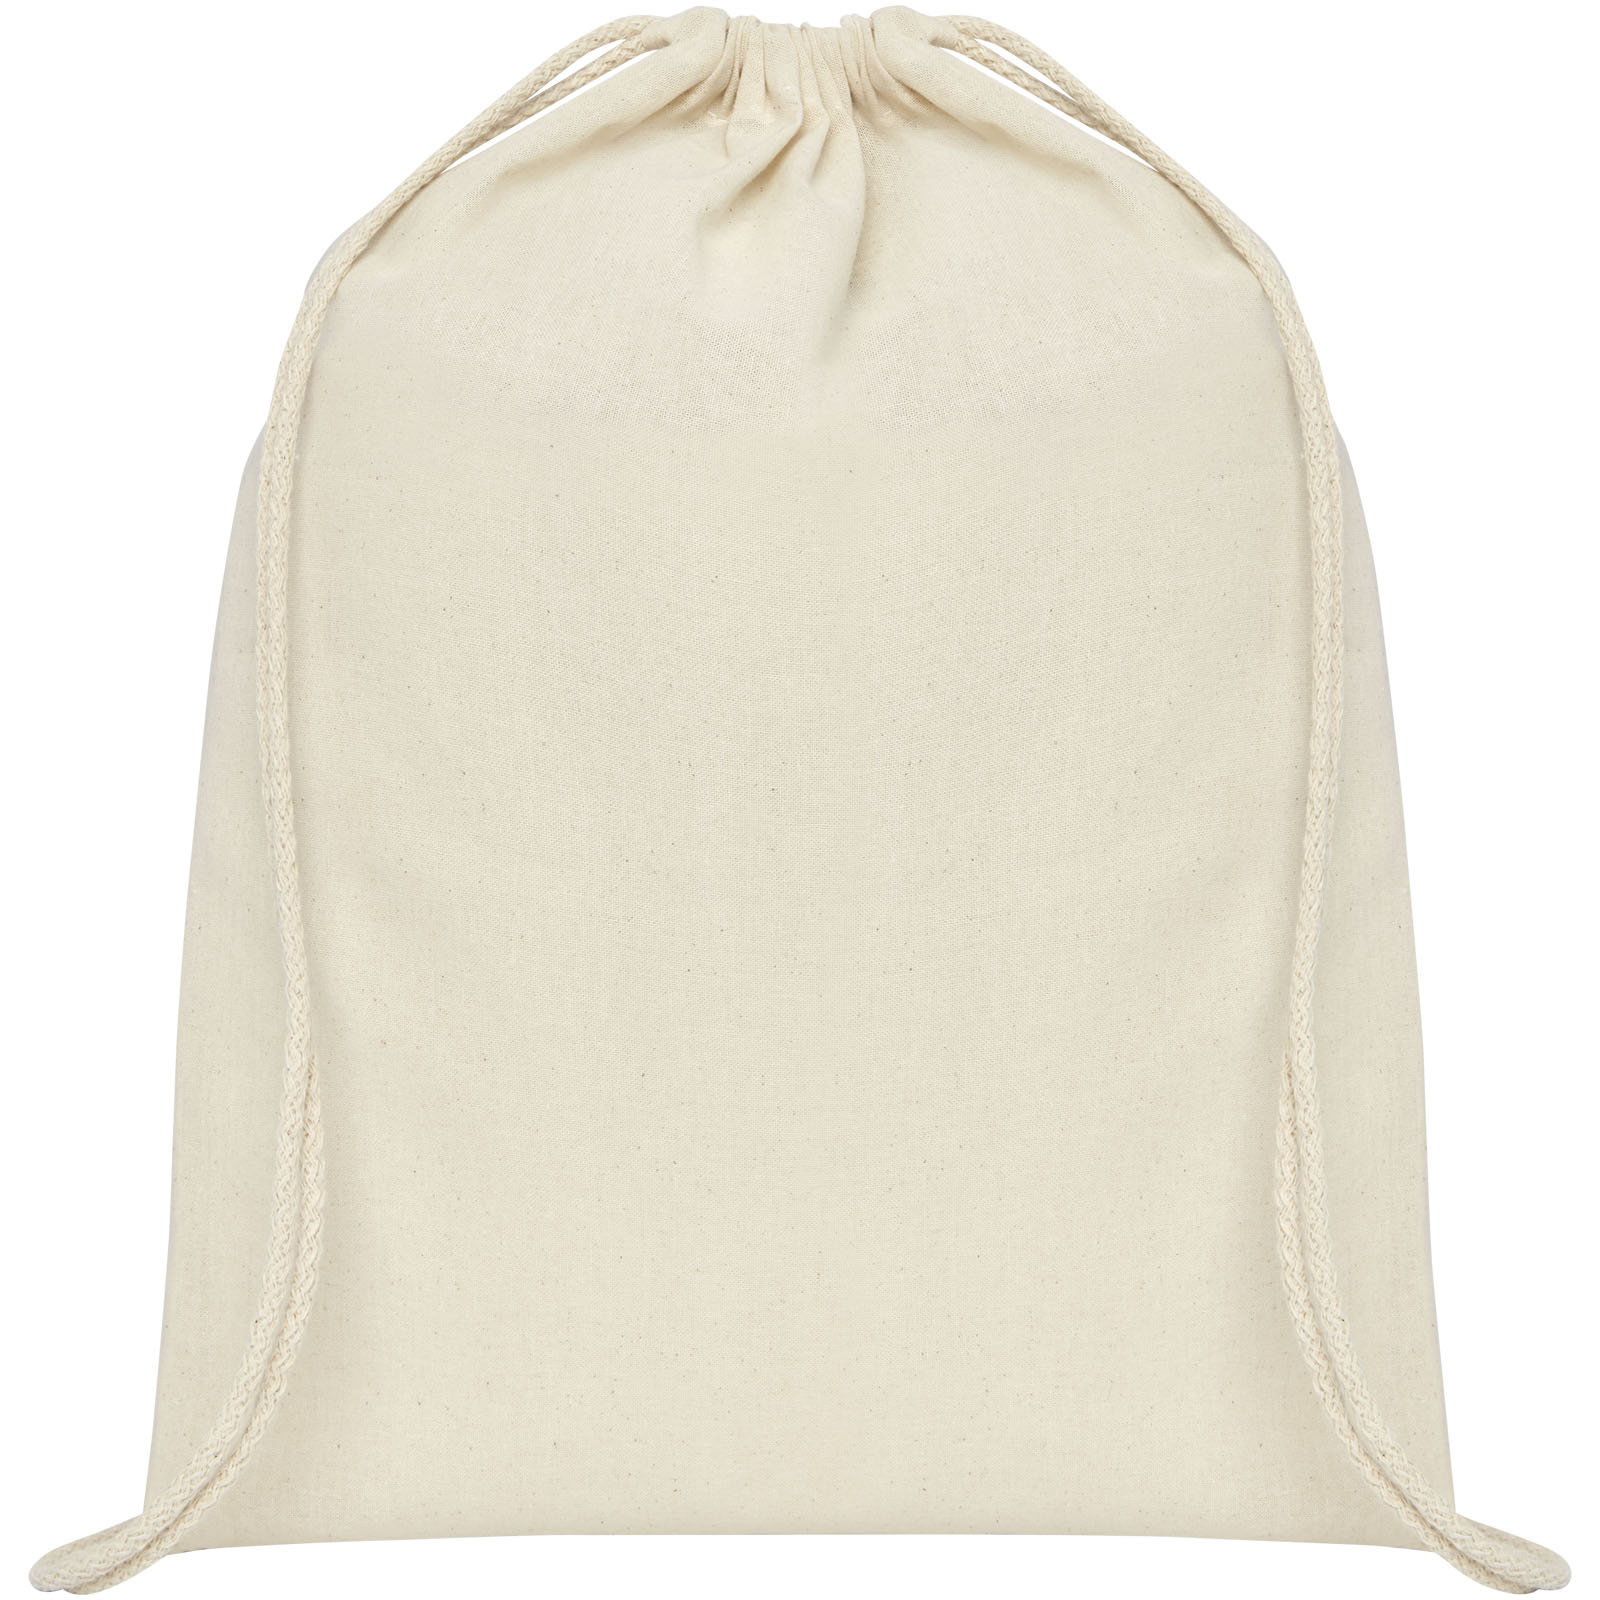 Advertising Drawstring Bags - Oregon 100 g/m² cotton drawstring bag 5L - 1